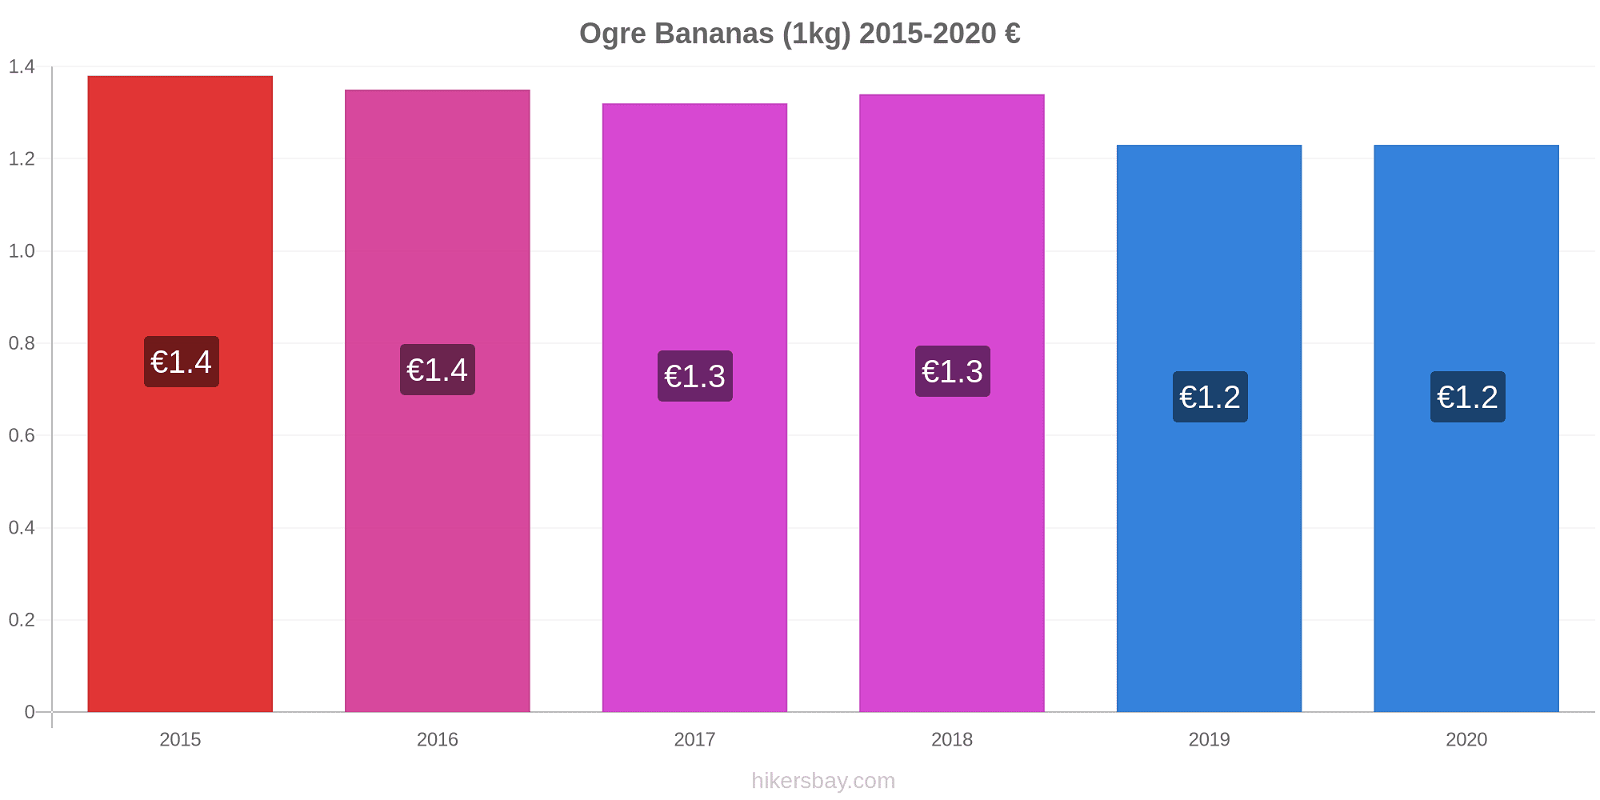 Ogre variação de preço Banana (1kg) hikersbay.com